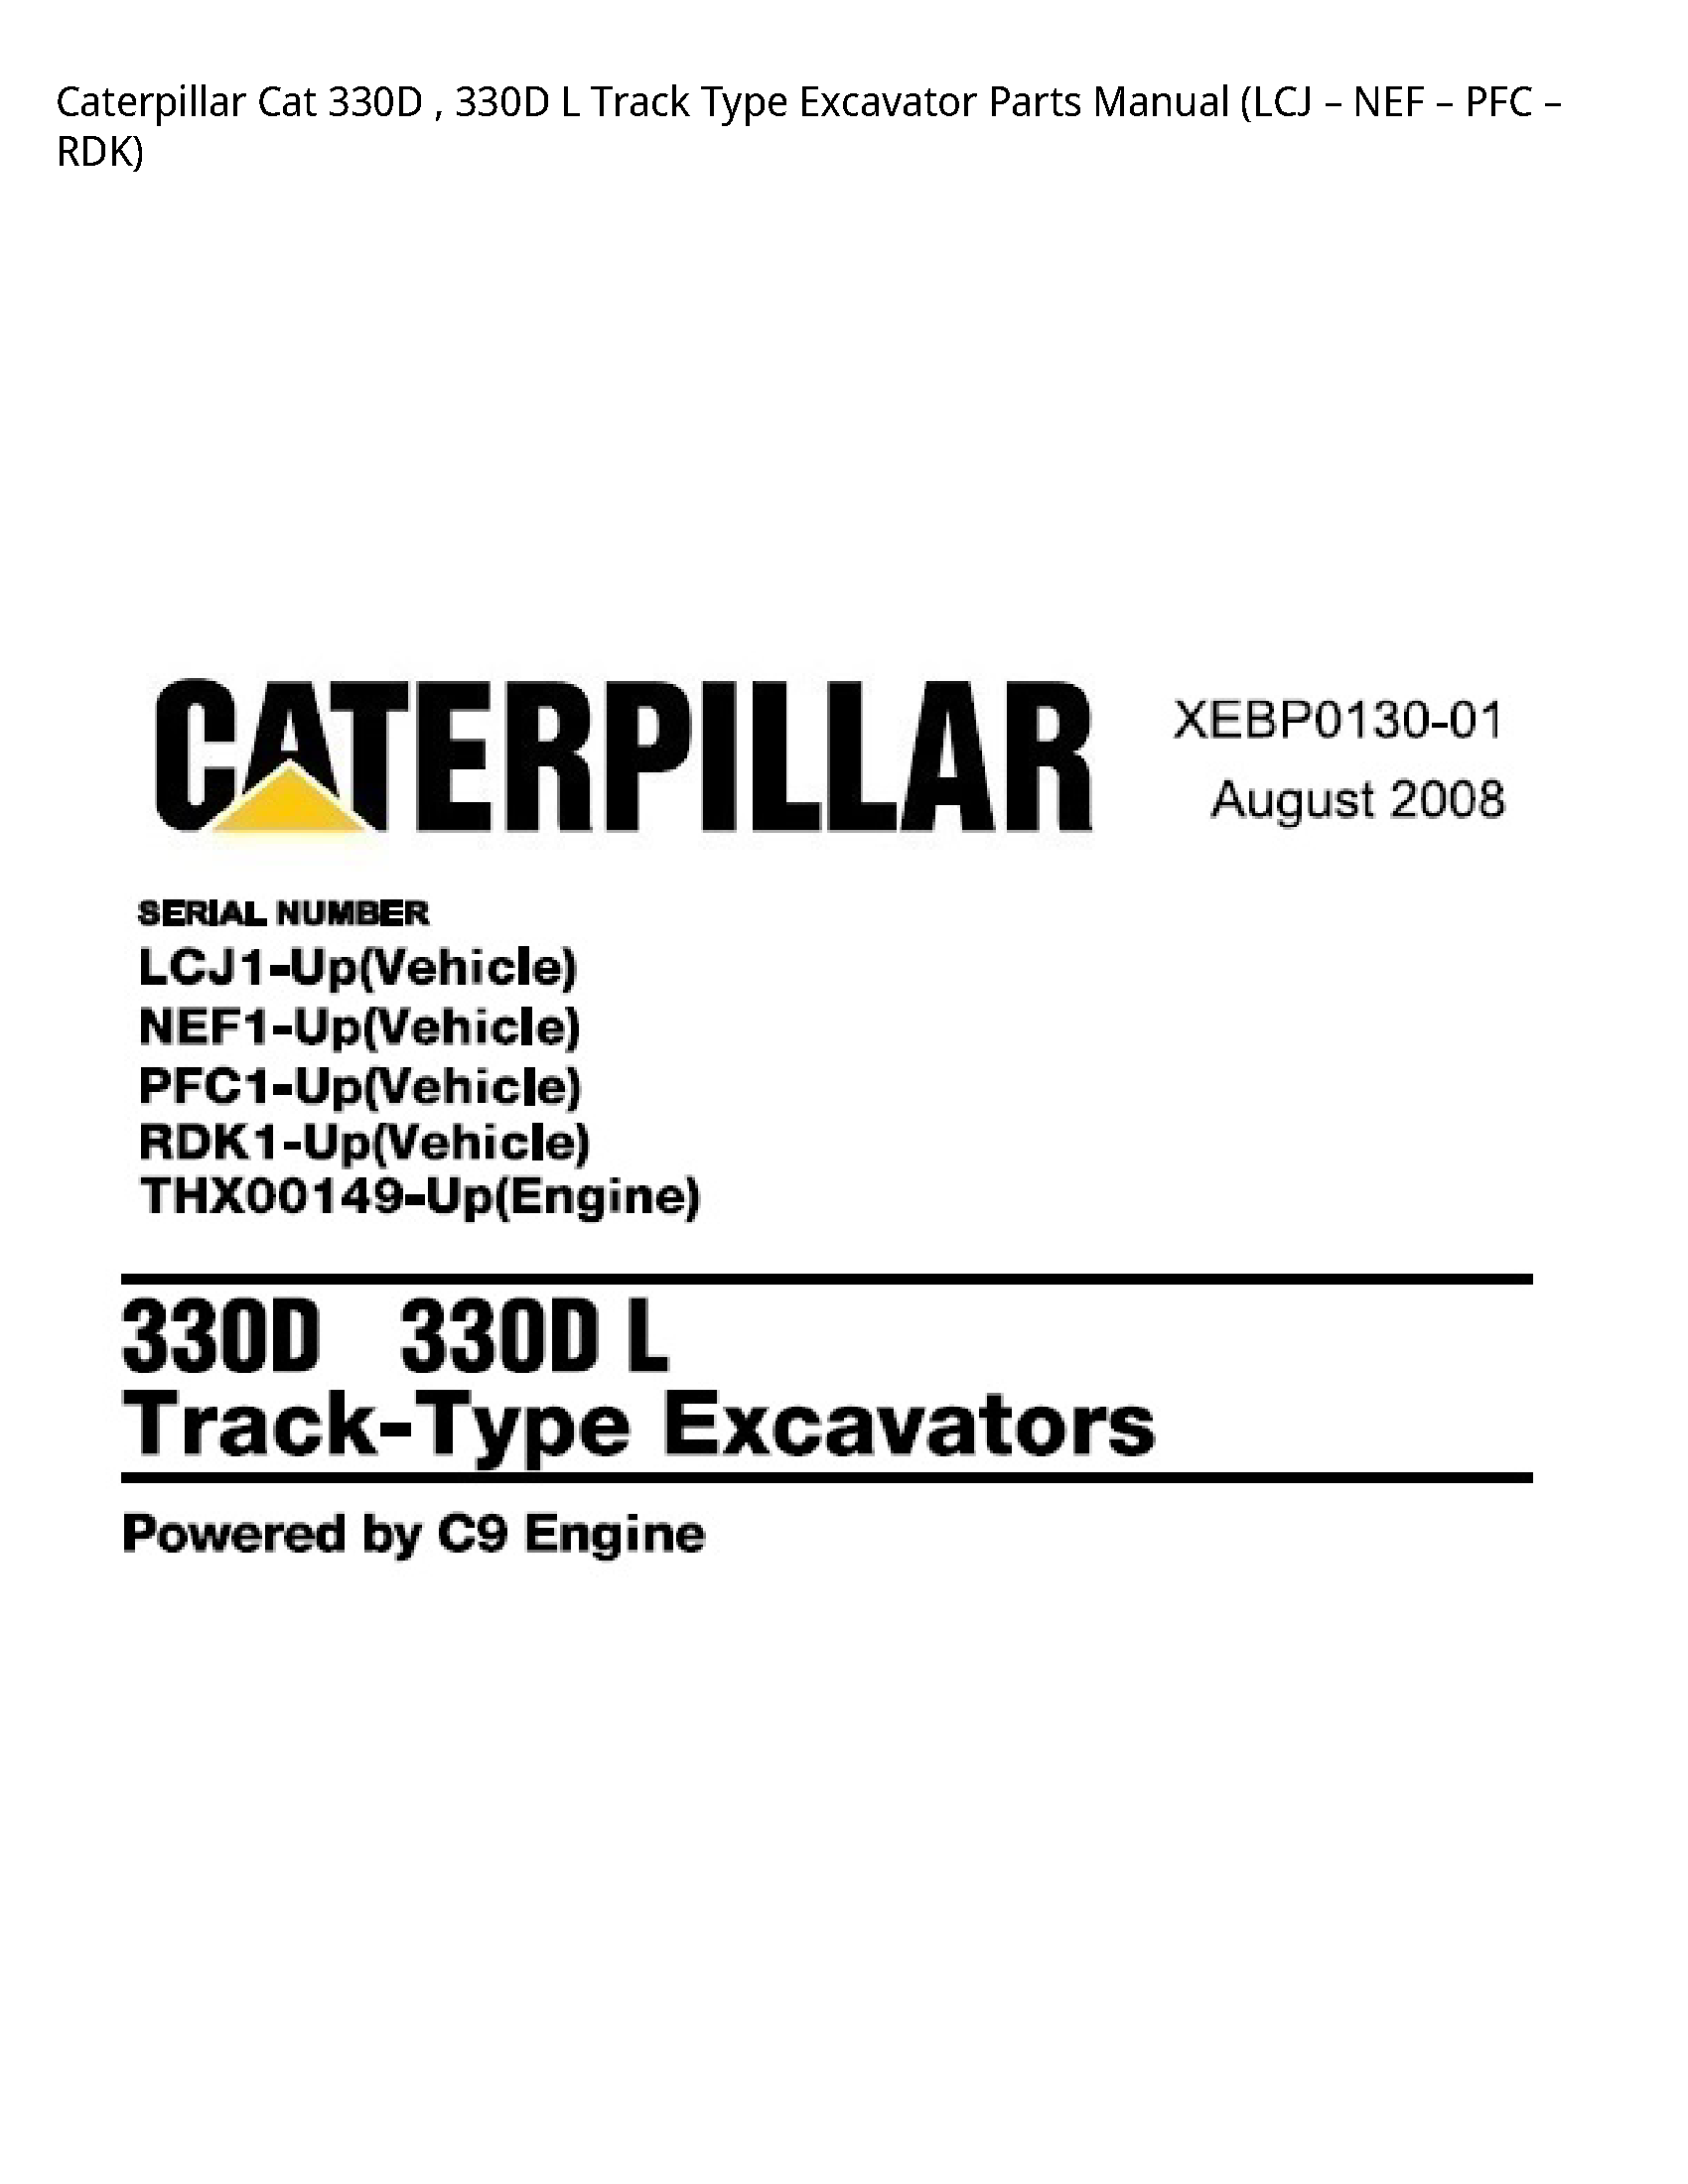 Caterpillar 330D Cat Track Type Excavator Parts manual